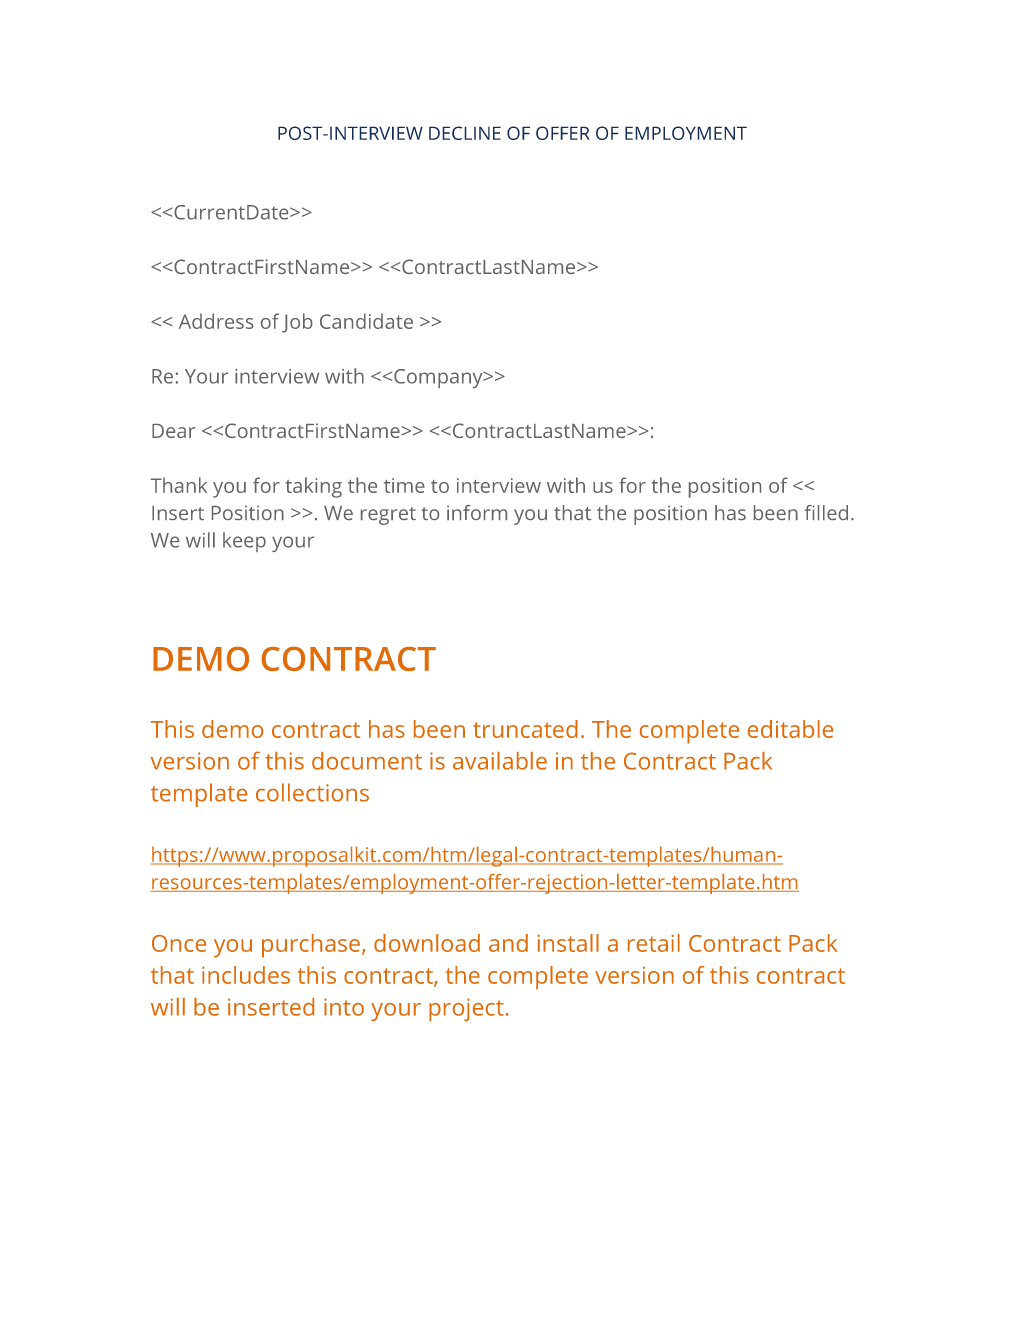 Job Offer Rejection Letter Sample from www.proposalkit.com